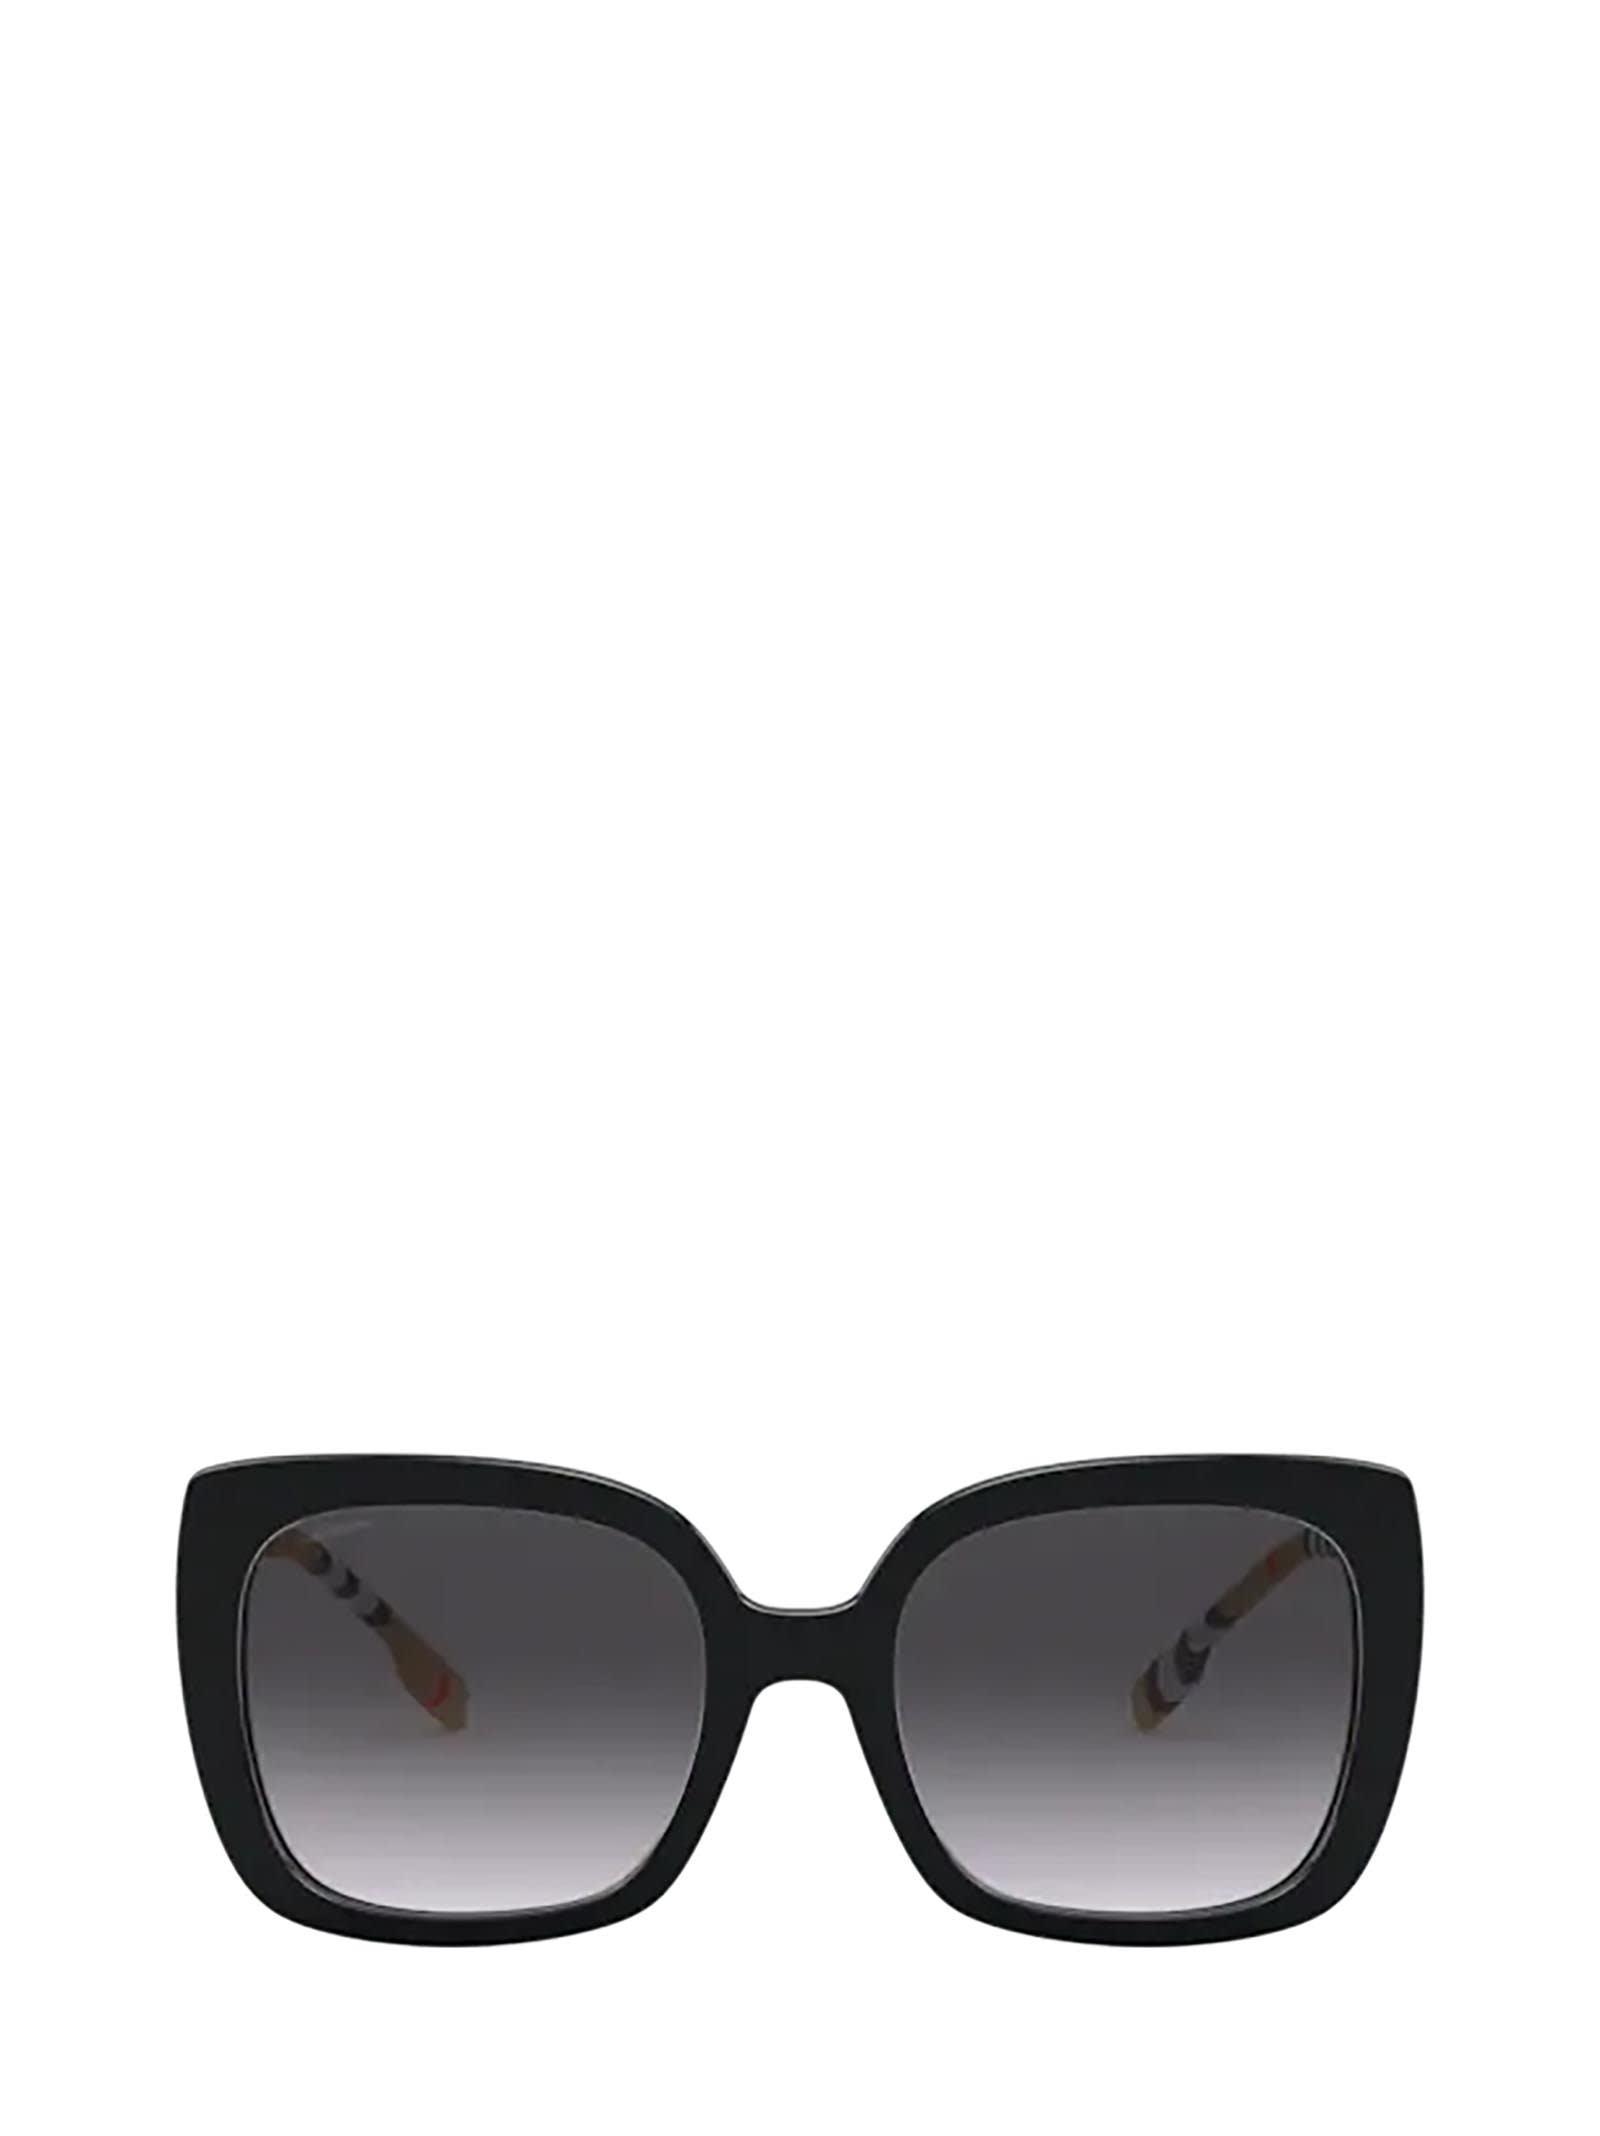 Burberry Burberry Be4323 Black Sunglasses